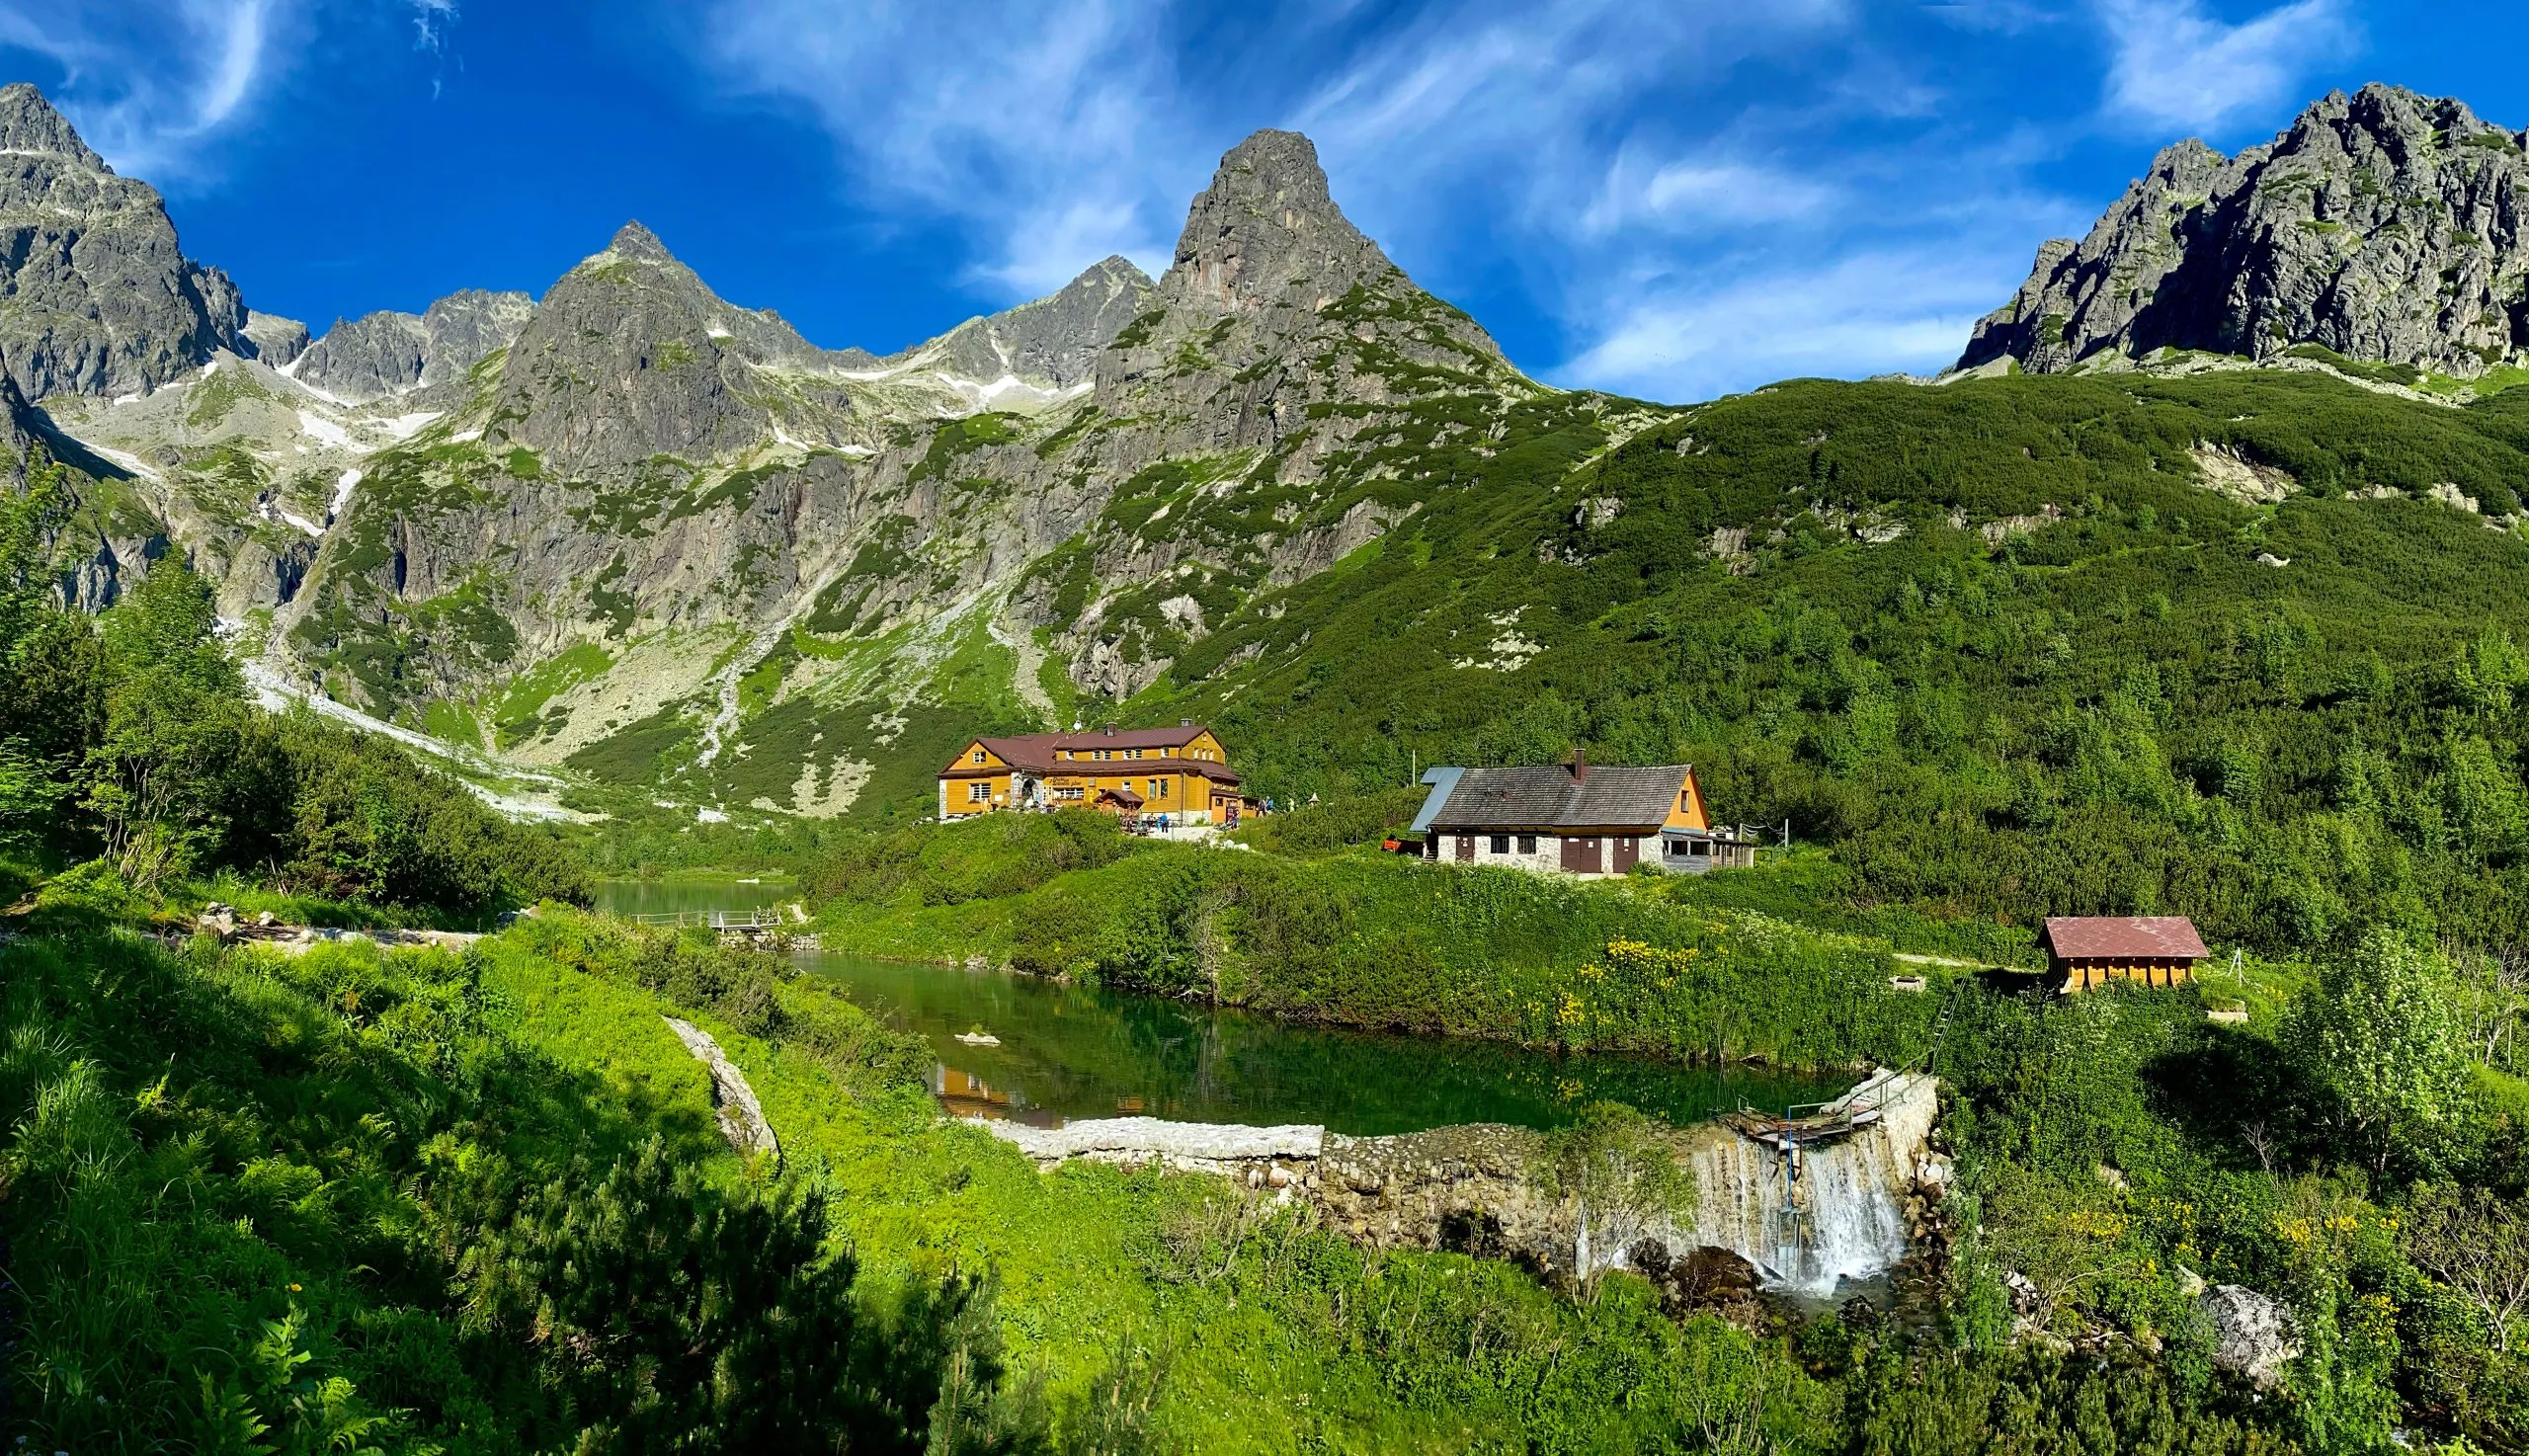 Slovakiets landskab. Hytte nær Zelene pleso, Vysoke Tatry NP, Europa. Solrig dag i bjergene. Stenet bakke er sommersæson. Høje Tatra, sø med grøn skov. Rejser i Slovakiet.